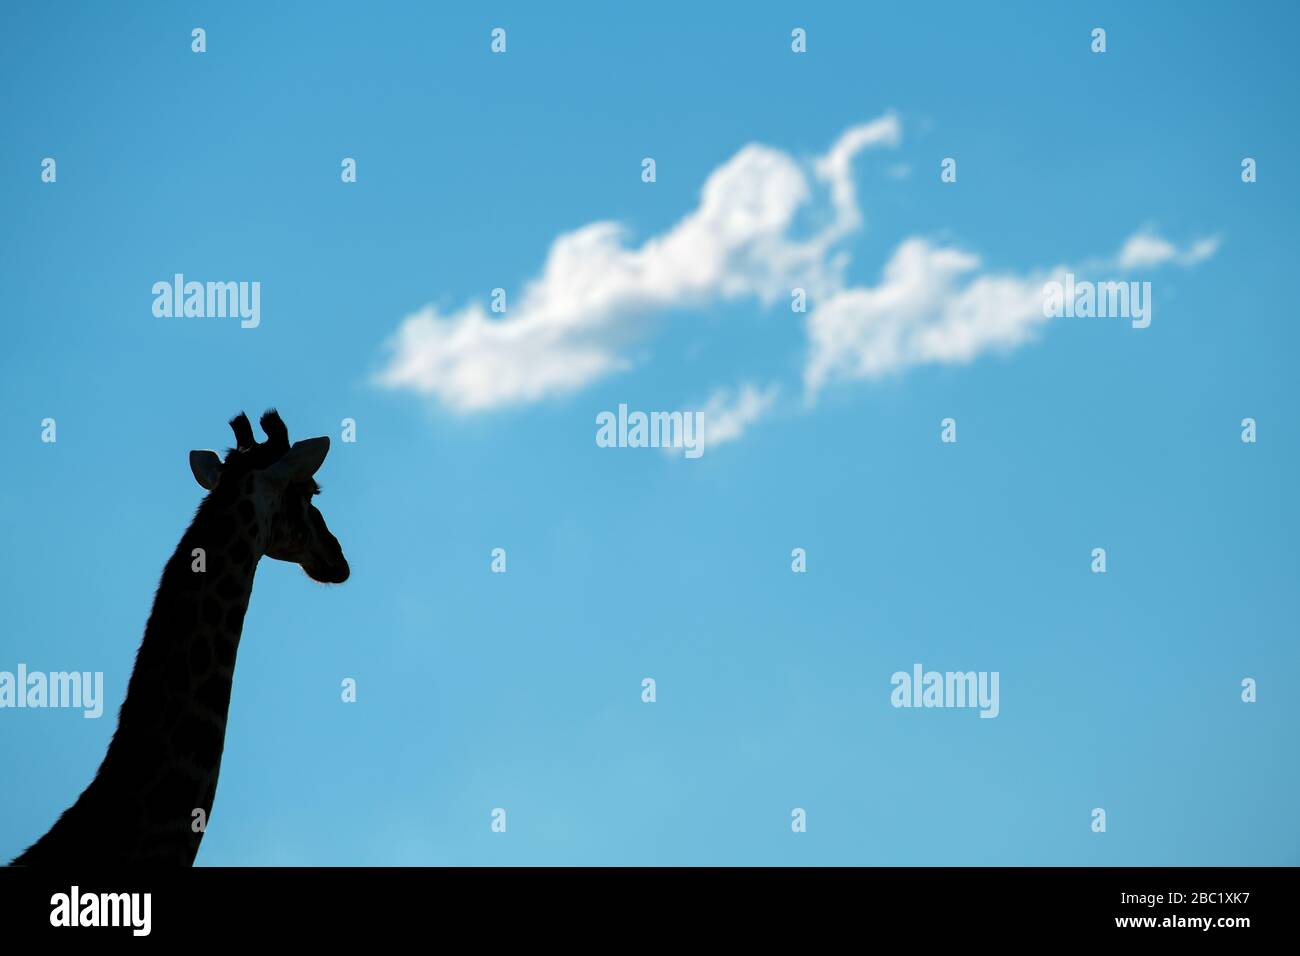 Una hermosa fotografía abstracta de una cabeza y cuello de jirafa siluetas contra un cielo azul profundo con nubes blancas puffy, tomada en el Rese de Juego de Madikwe Foto de stock